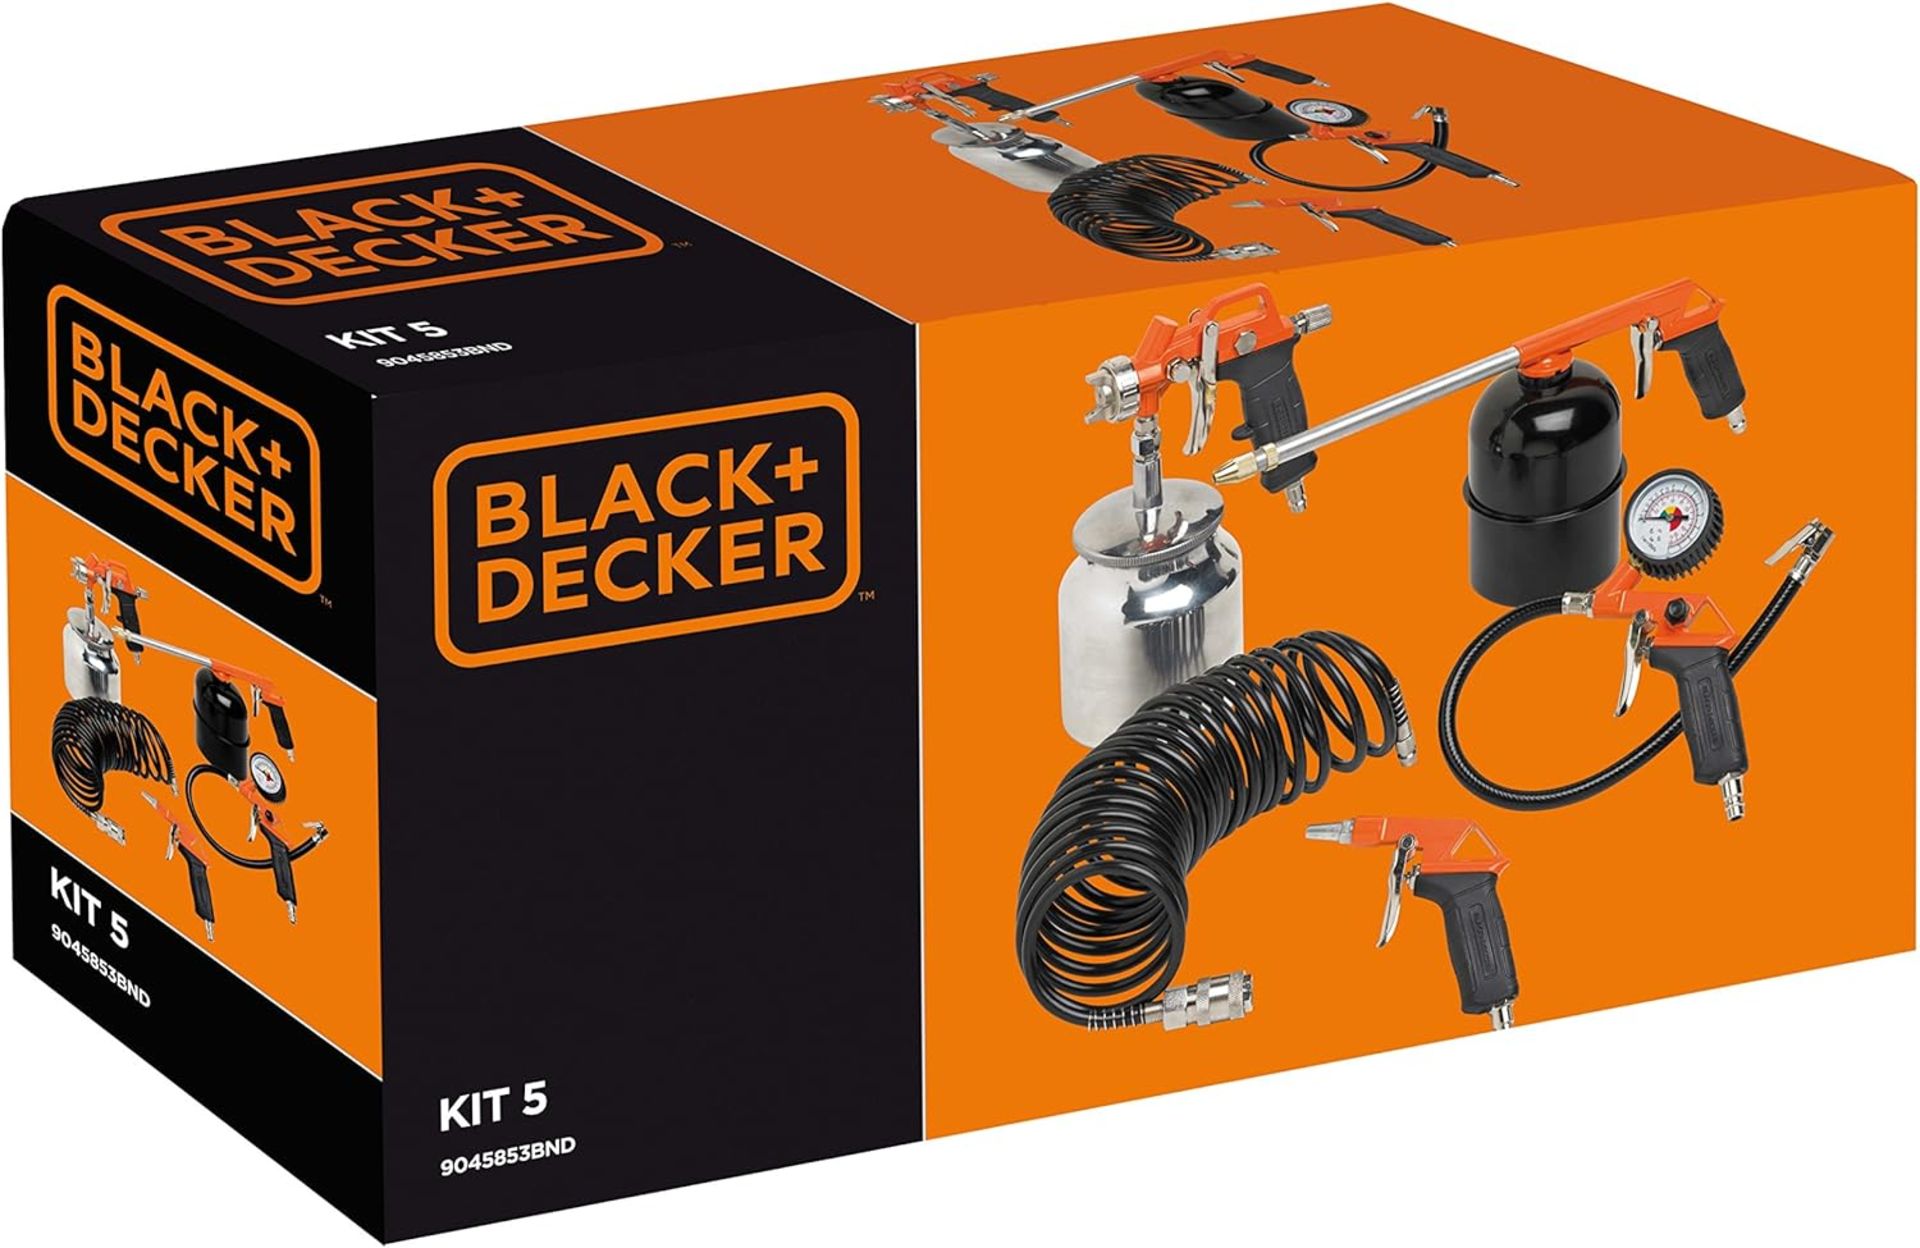 4 X Brand New Black & Decker 5 Piece Air Tool Kit, • Blowing Gun • Inflating Gun • Spray Gun • - Image 7 of 7